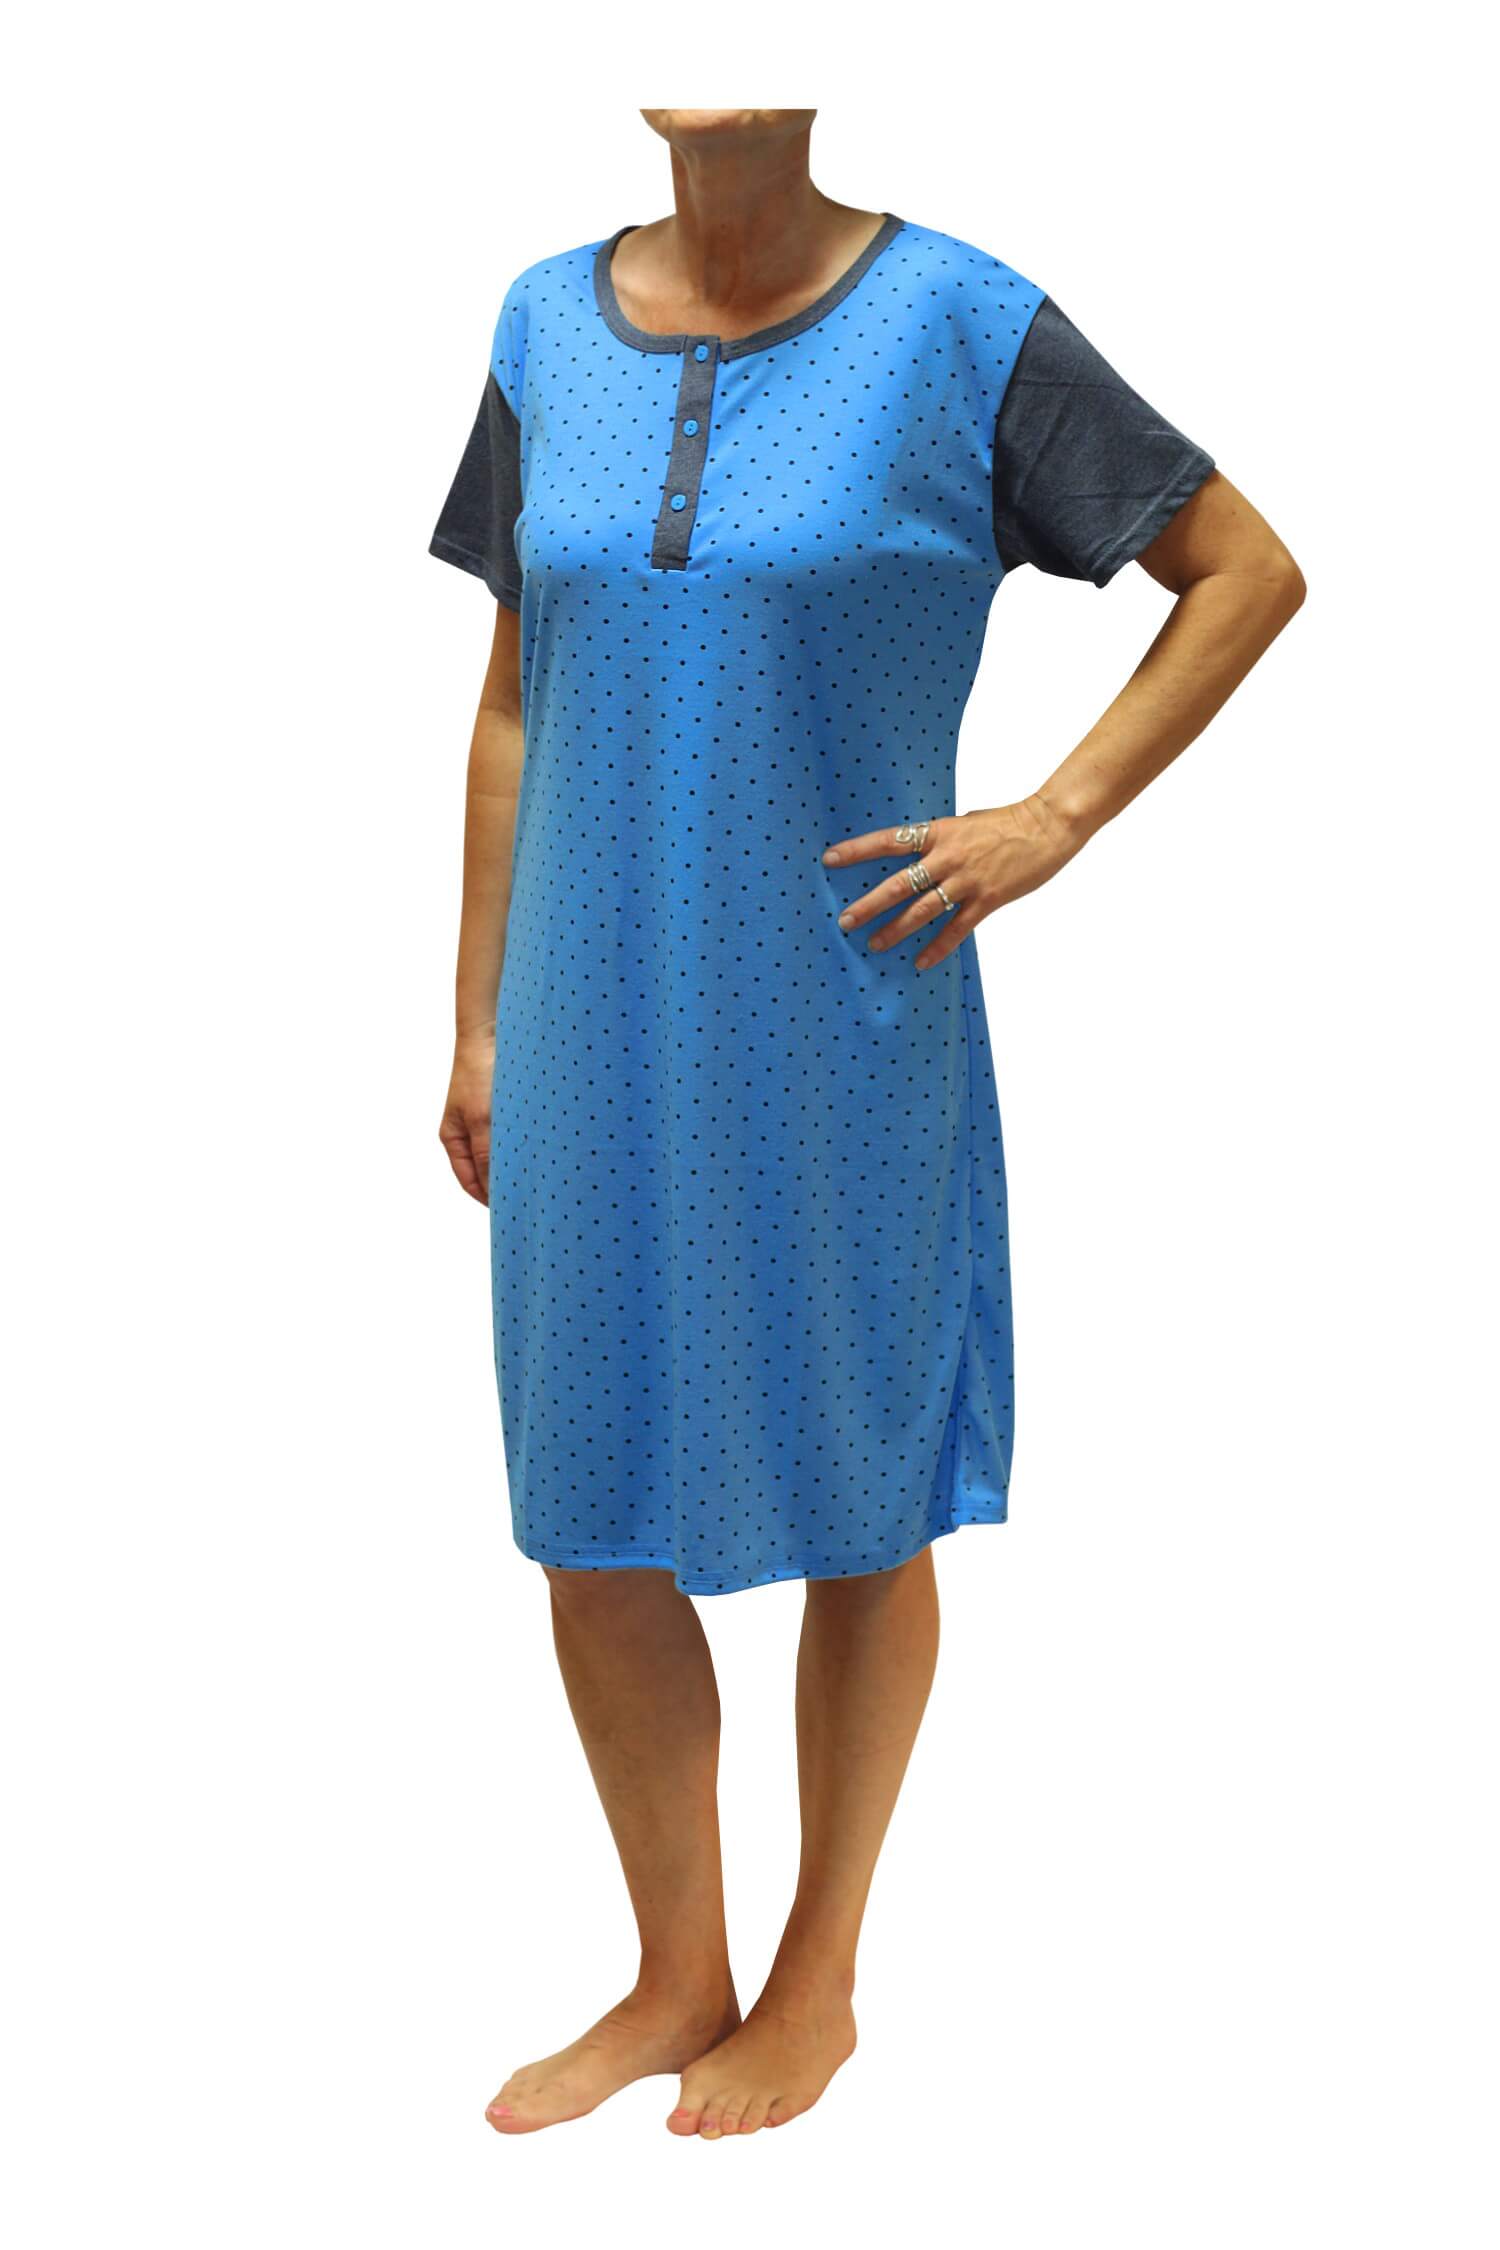 Adéla dámská noční košile s puntíky DNU329-NT L modrá